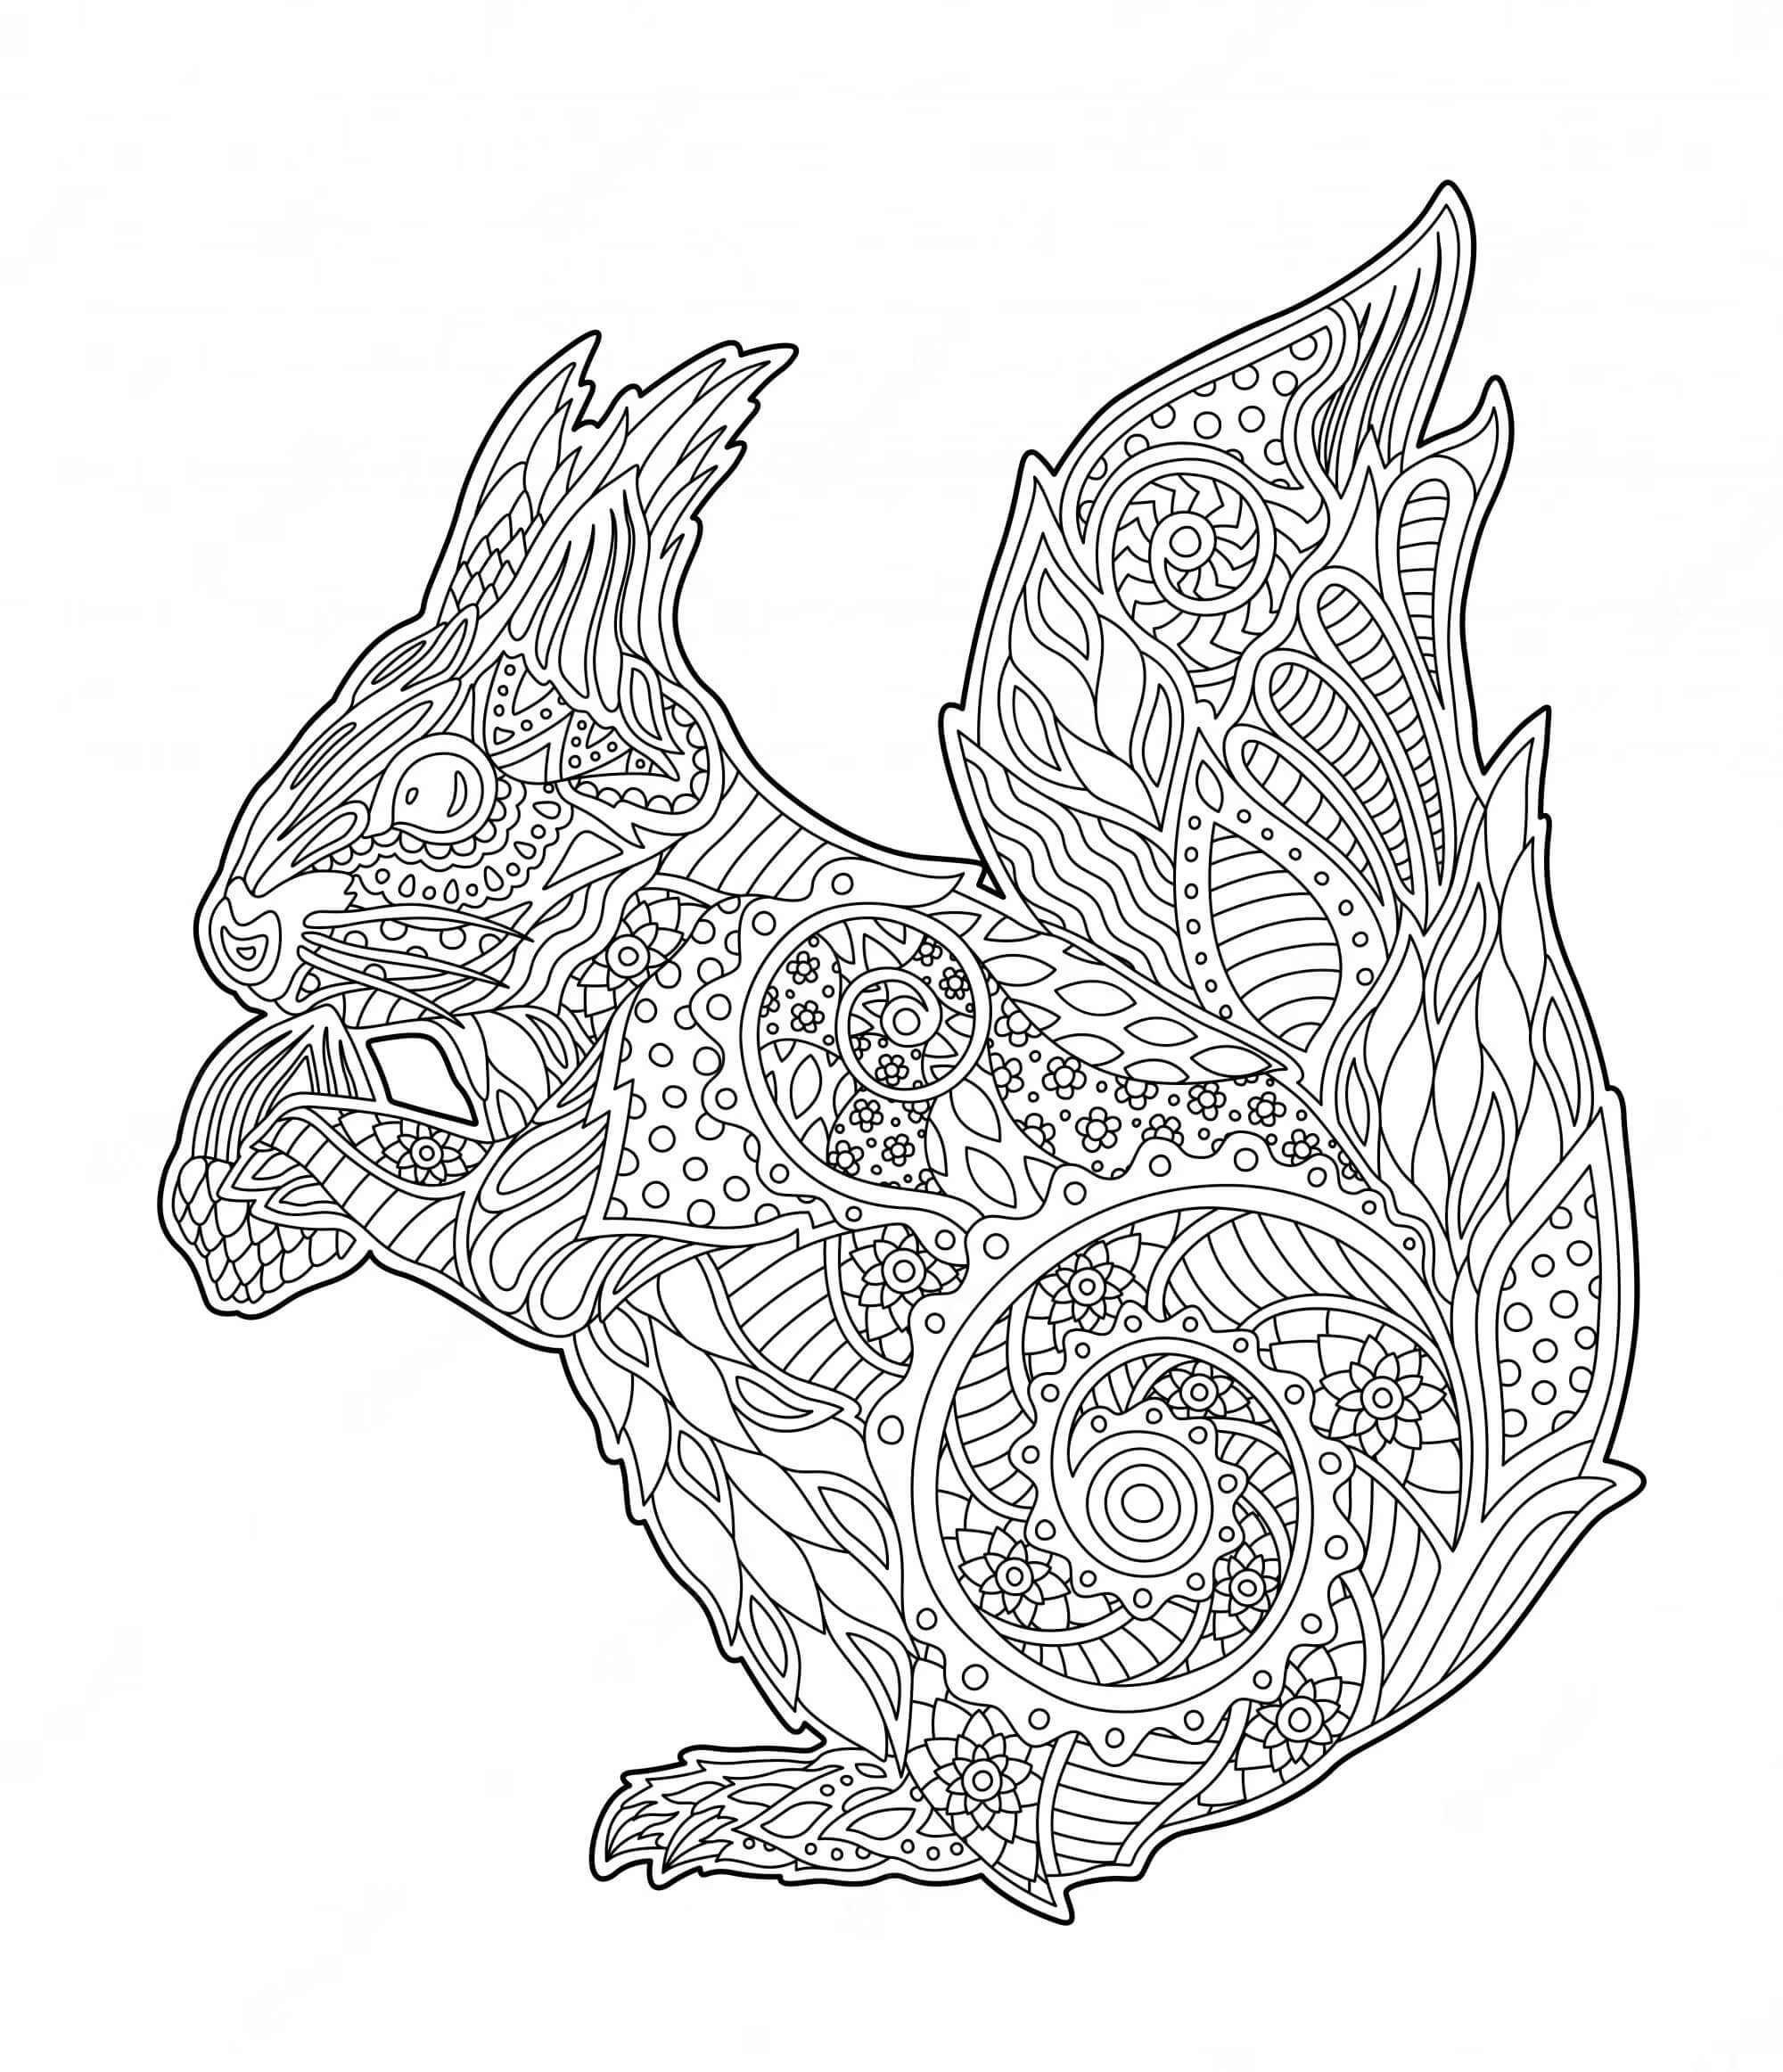 Mandala Squirrel Coloring Page - Sheet 2 Mandalas